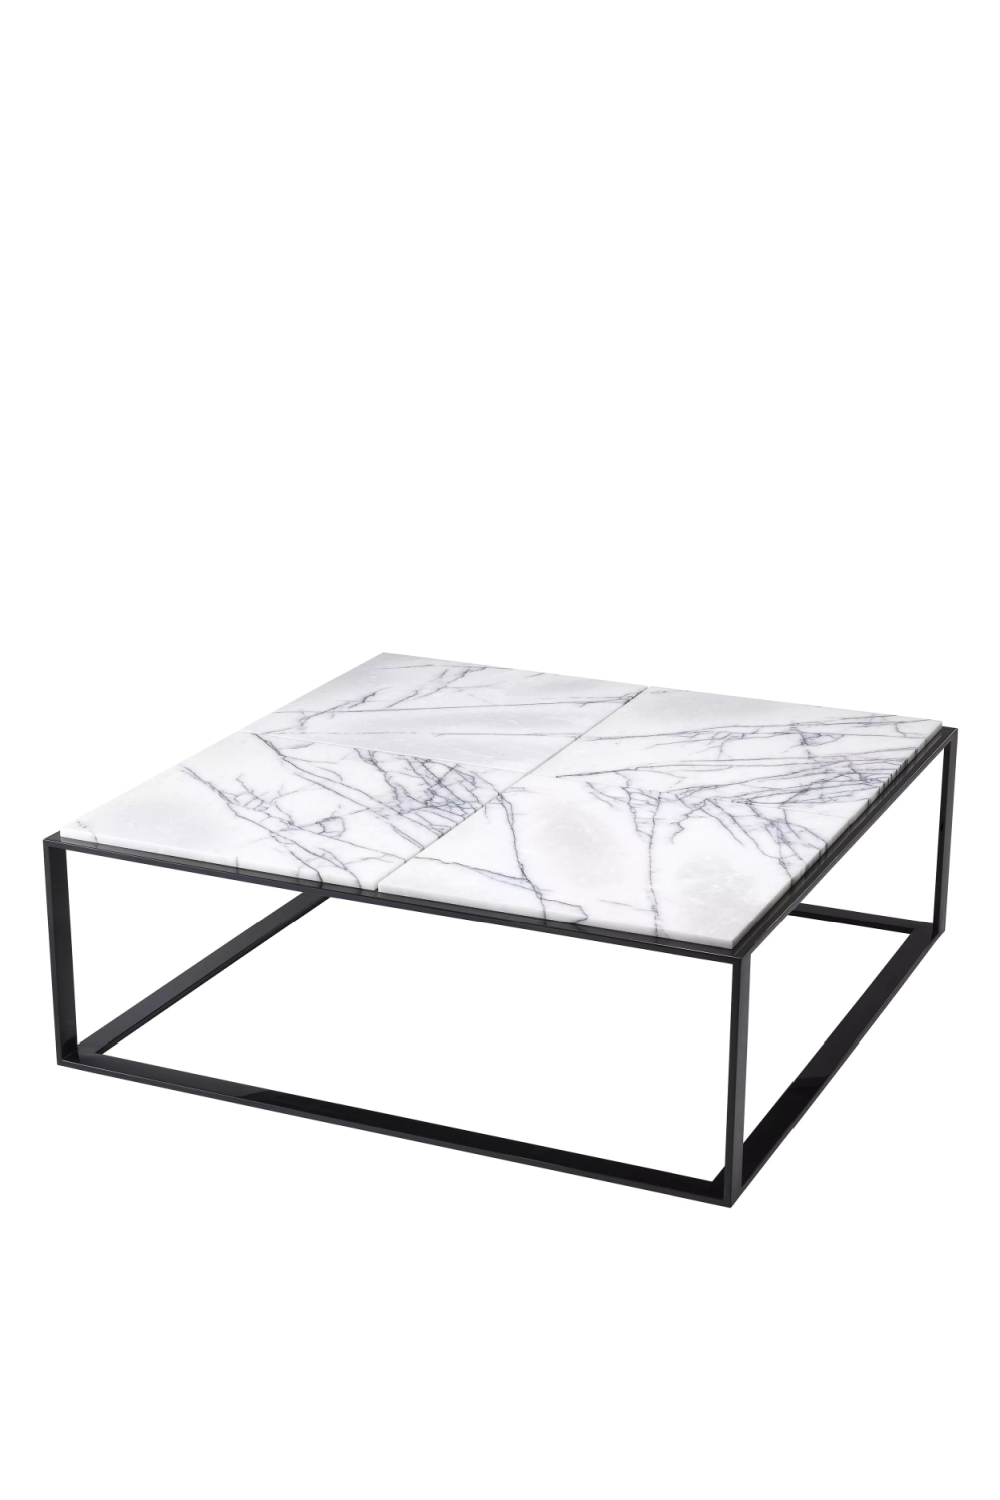 Set of 16, Adria Coffee Table - White Marble with Black Metal Leg